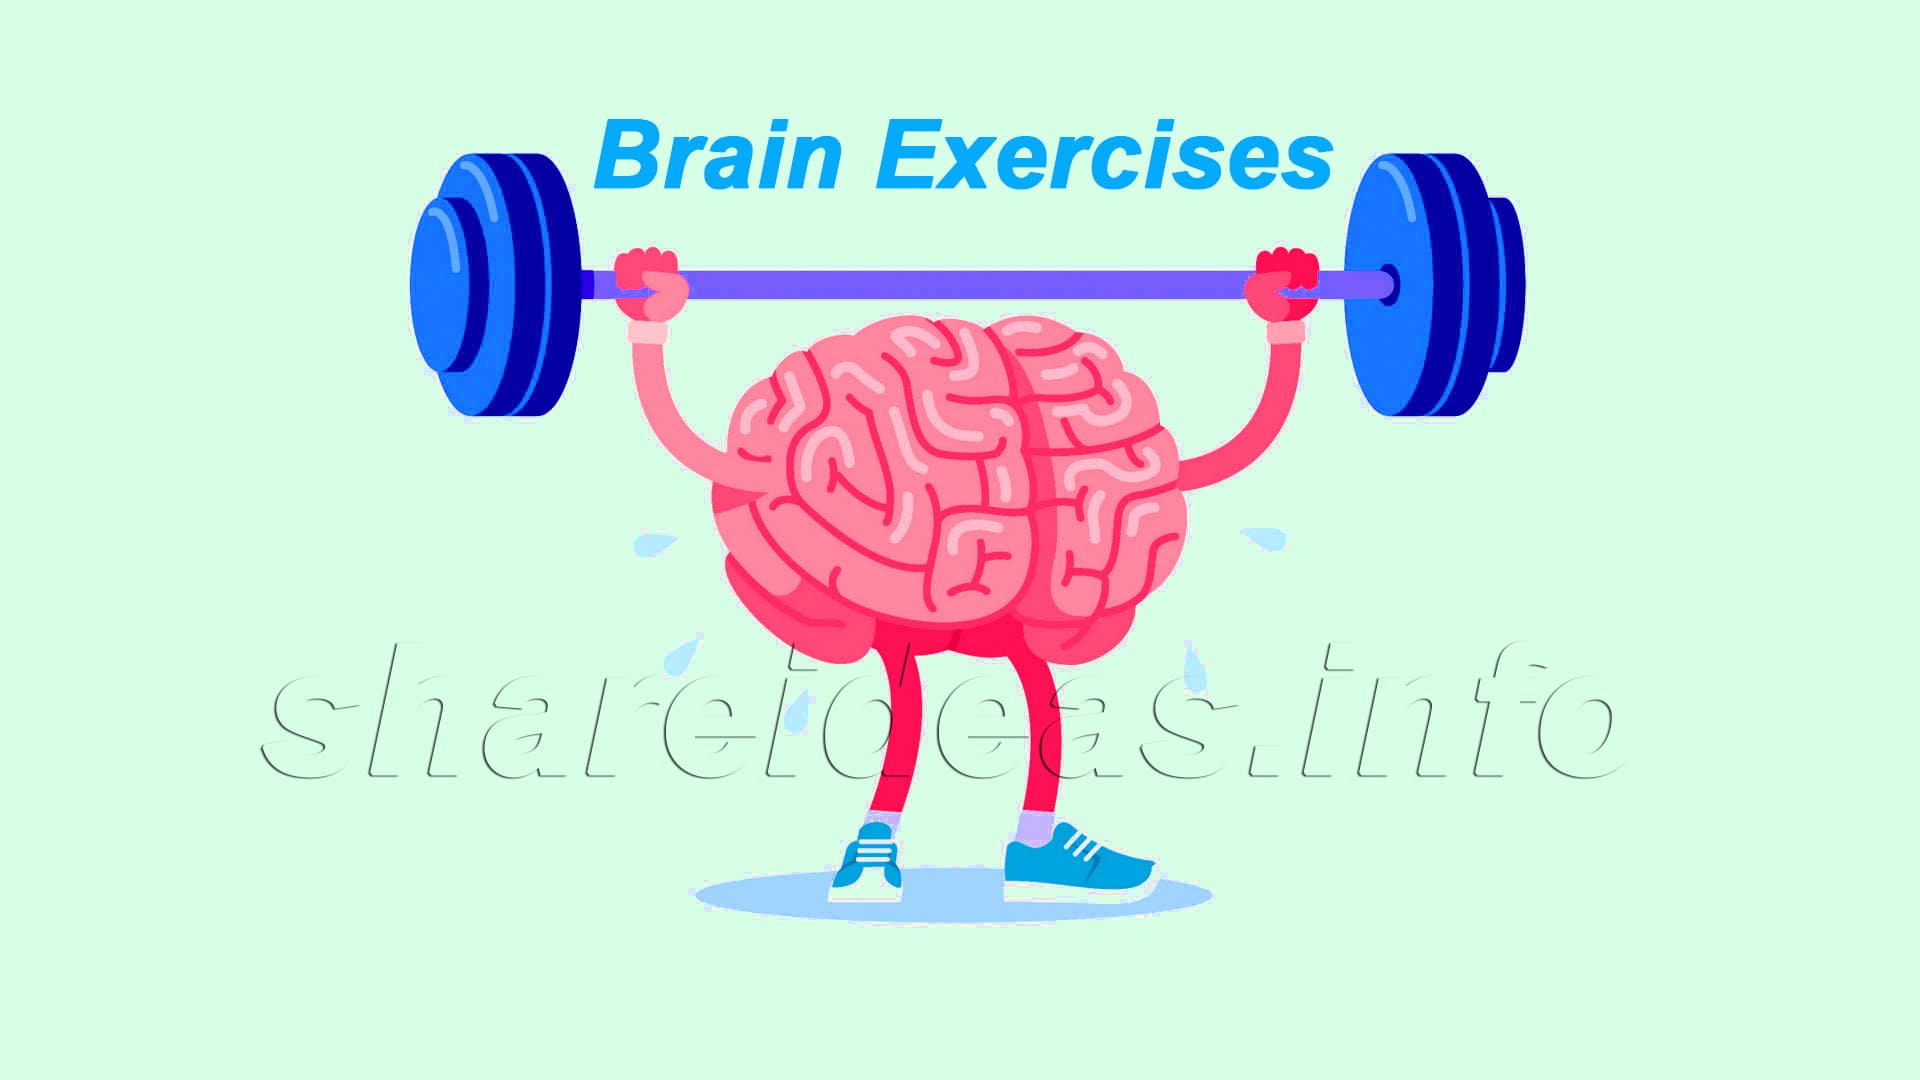 7 Brain Exercises will make you genius